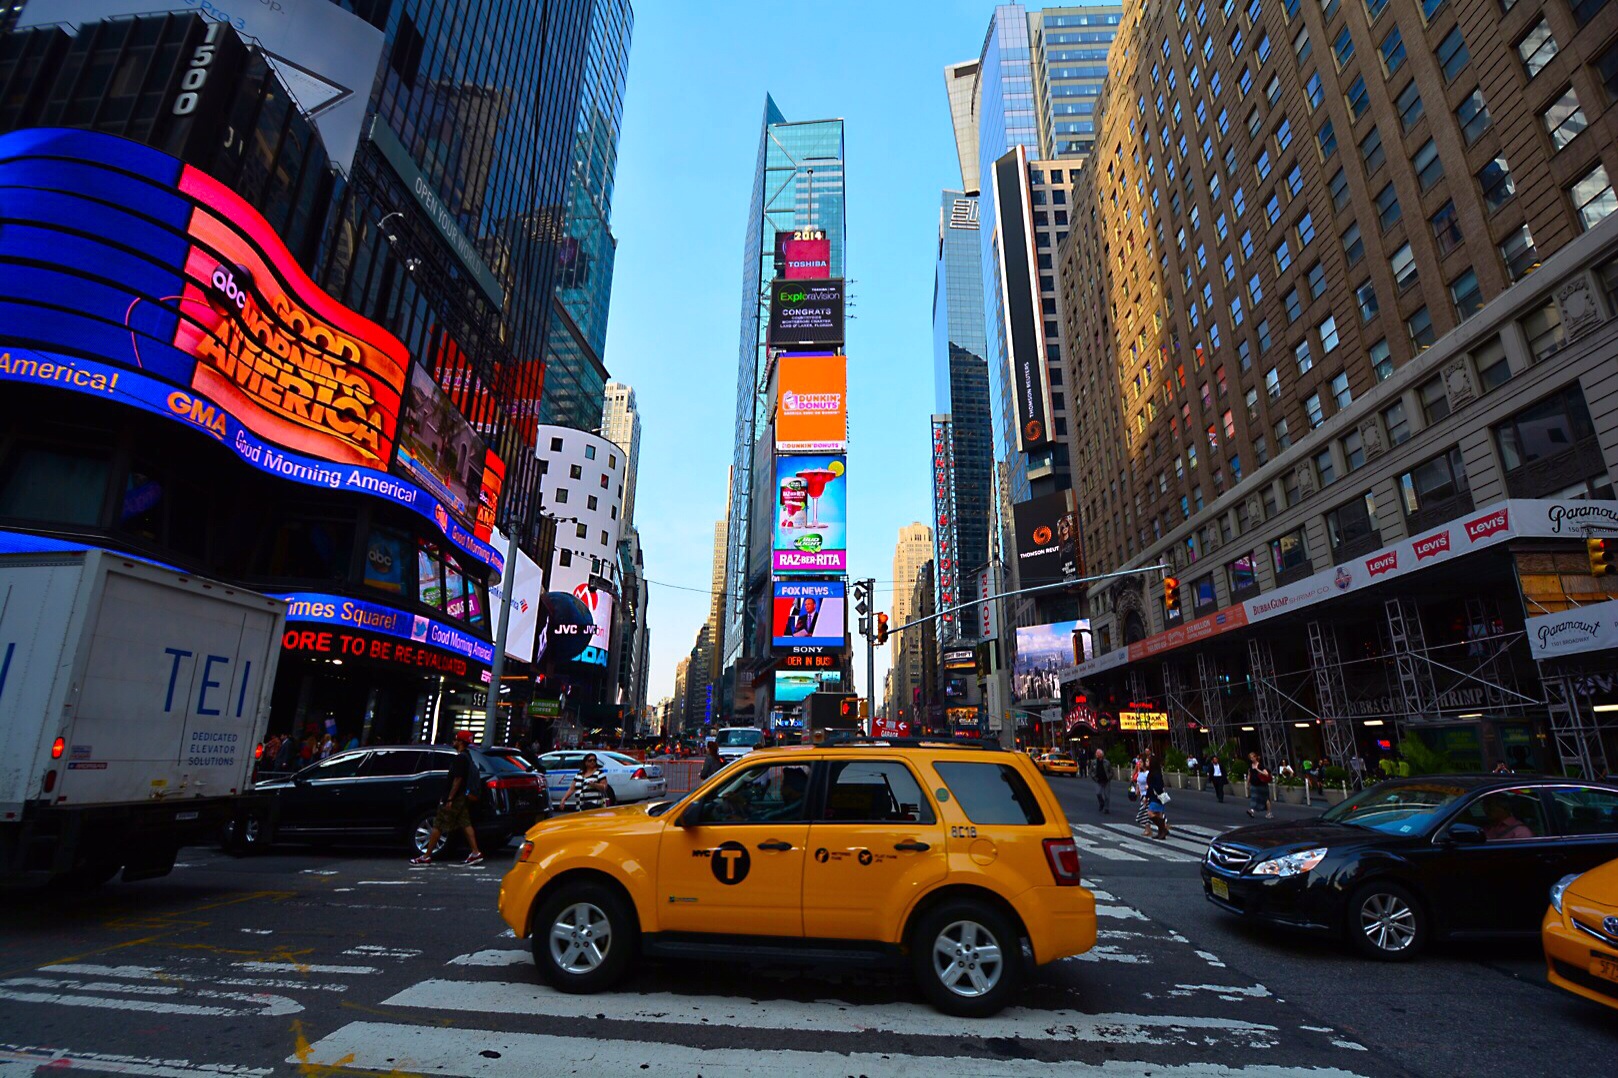 NYC - Times Square USA...